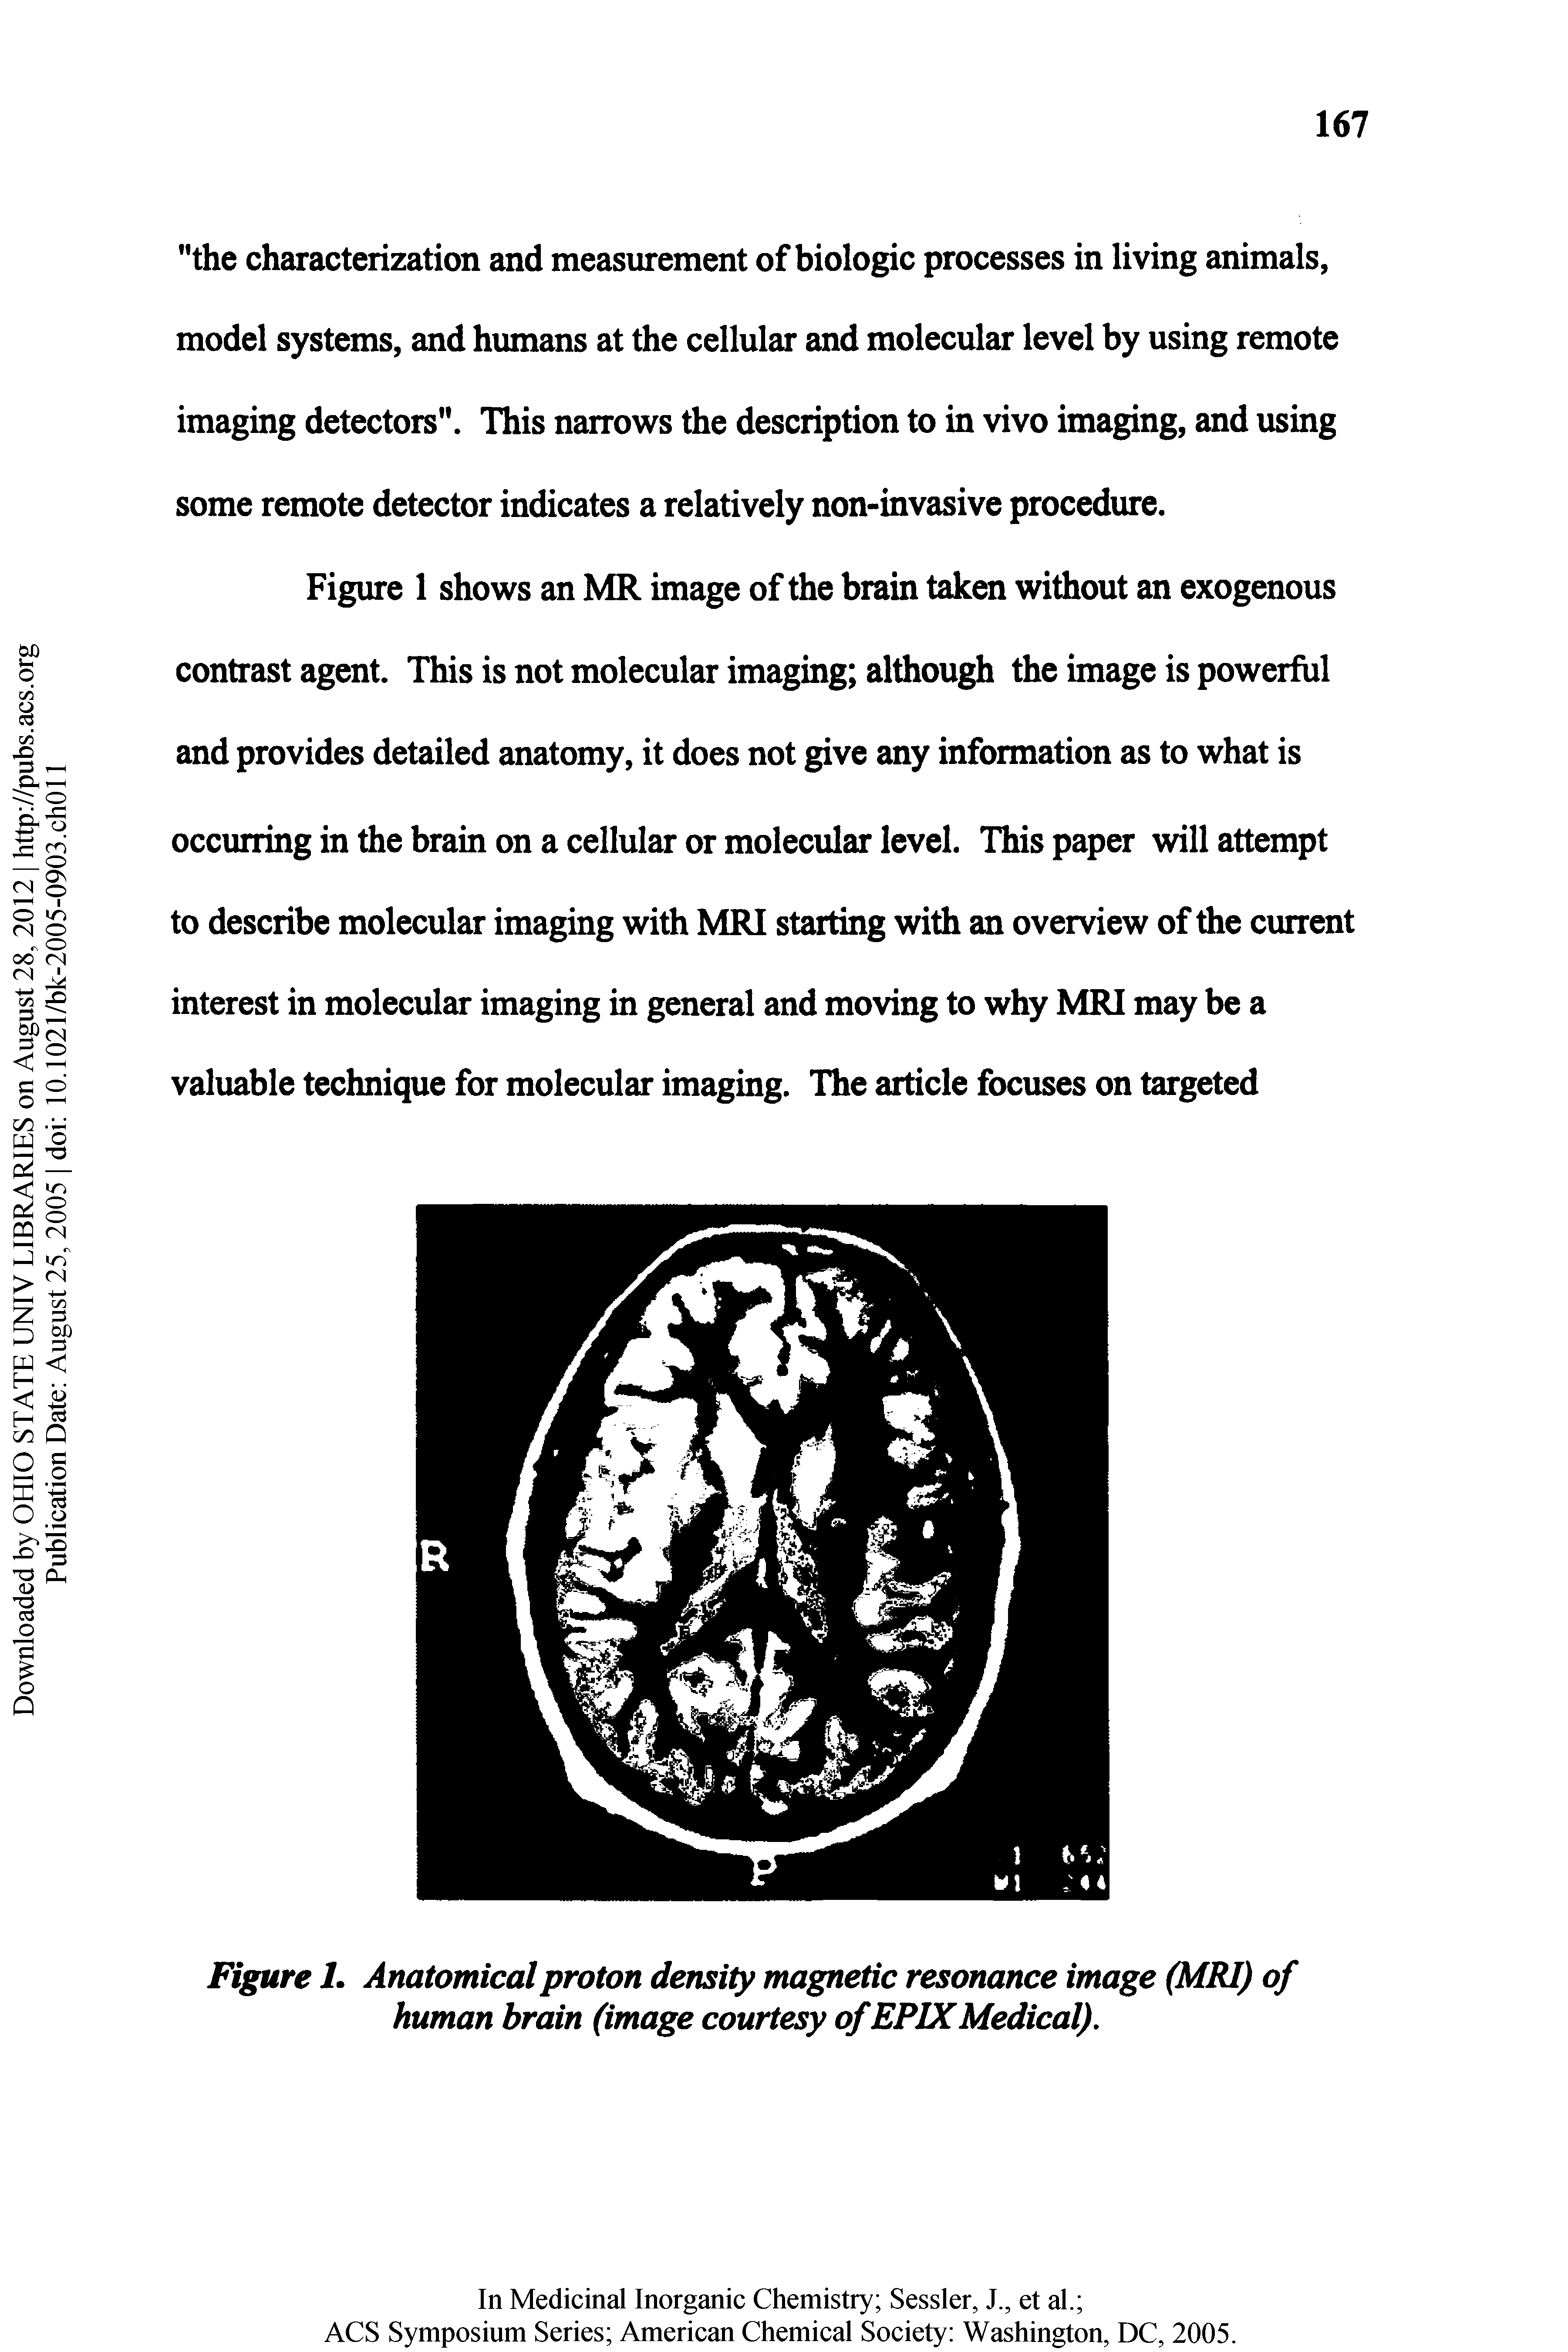 Figure I. Anatomical proton density magnetic resonance image (MRI) of human brain (image courtesy of EPIXMedical).